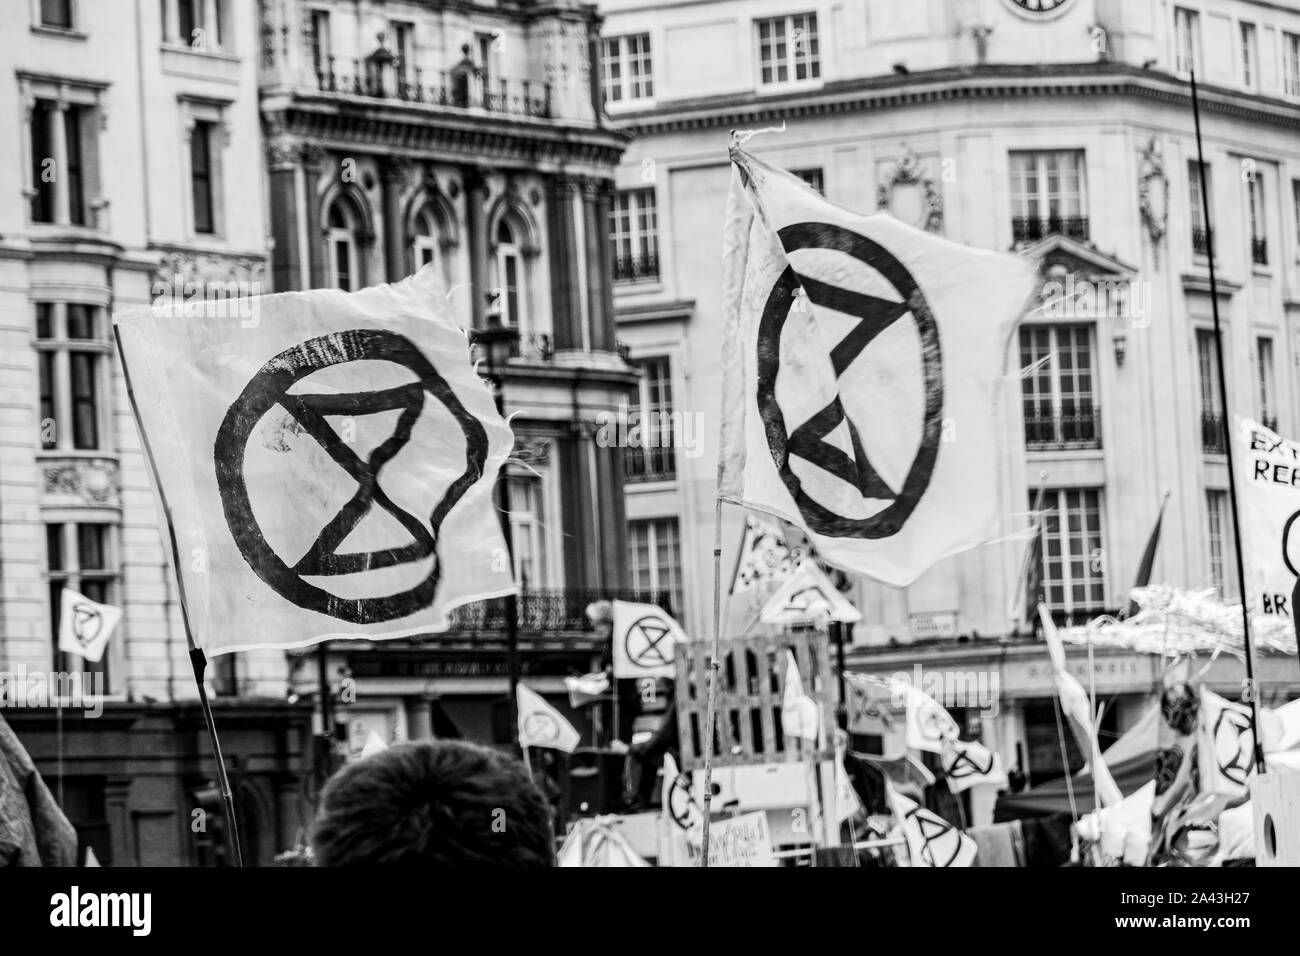 Rebelión de extinción, ocupa Trafalgar Square en Londres, pidiendo al gobierno actuar ahora contra el cambio climático Foto de stock